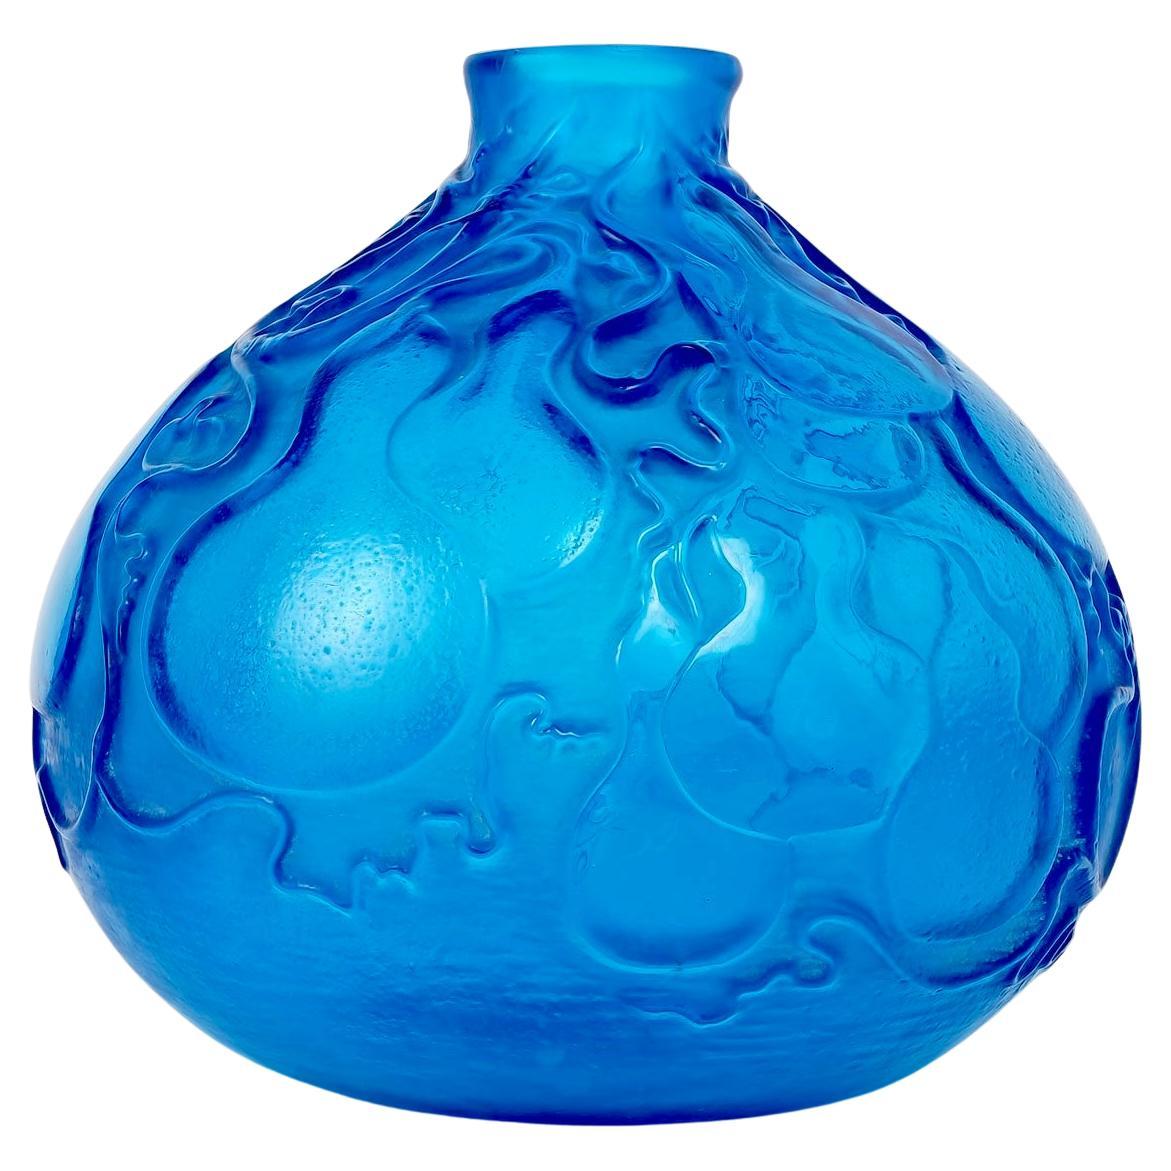 1914 René Lalique - Vase Courges Electric Blue Glass For Sale